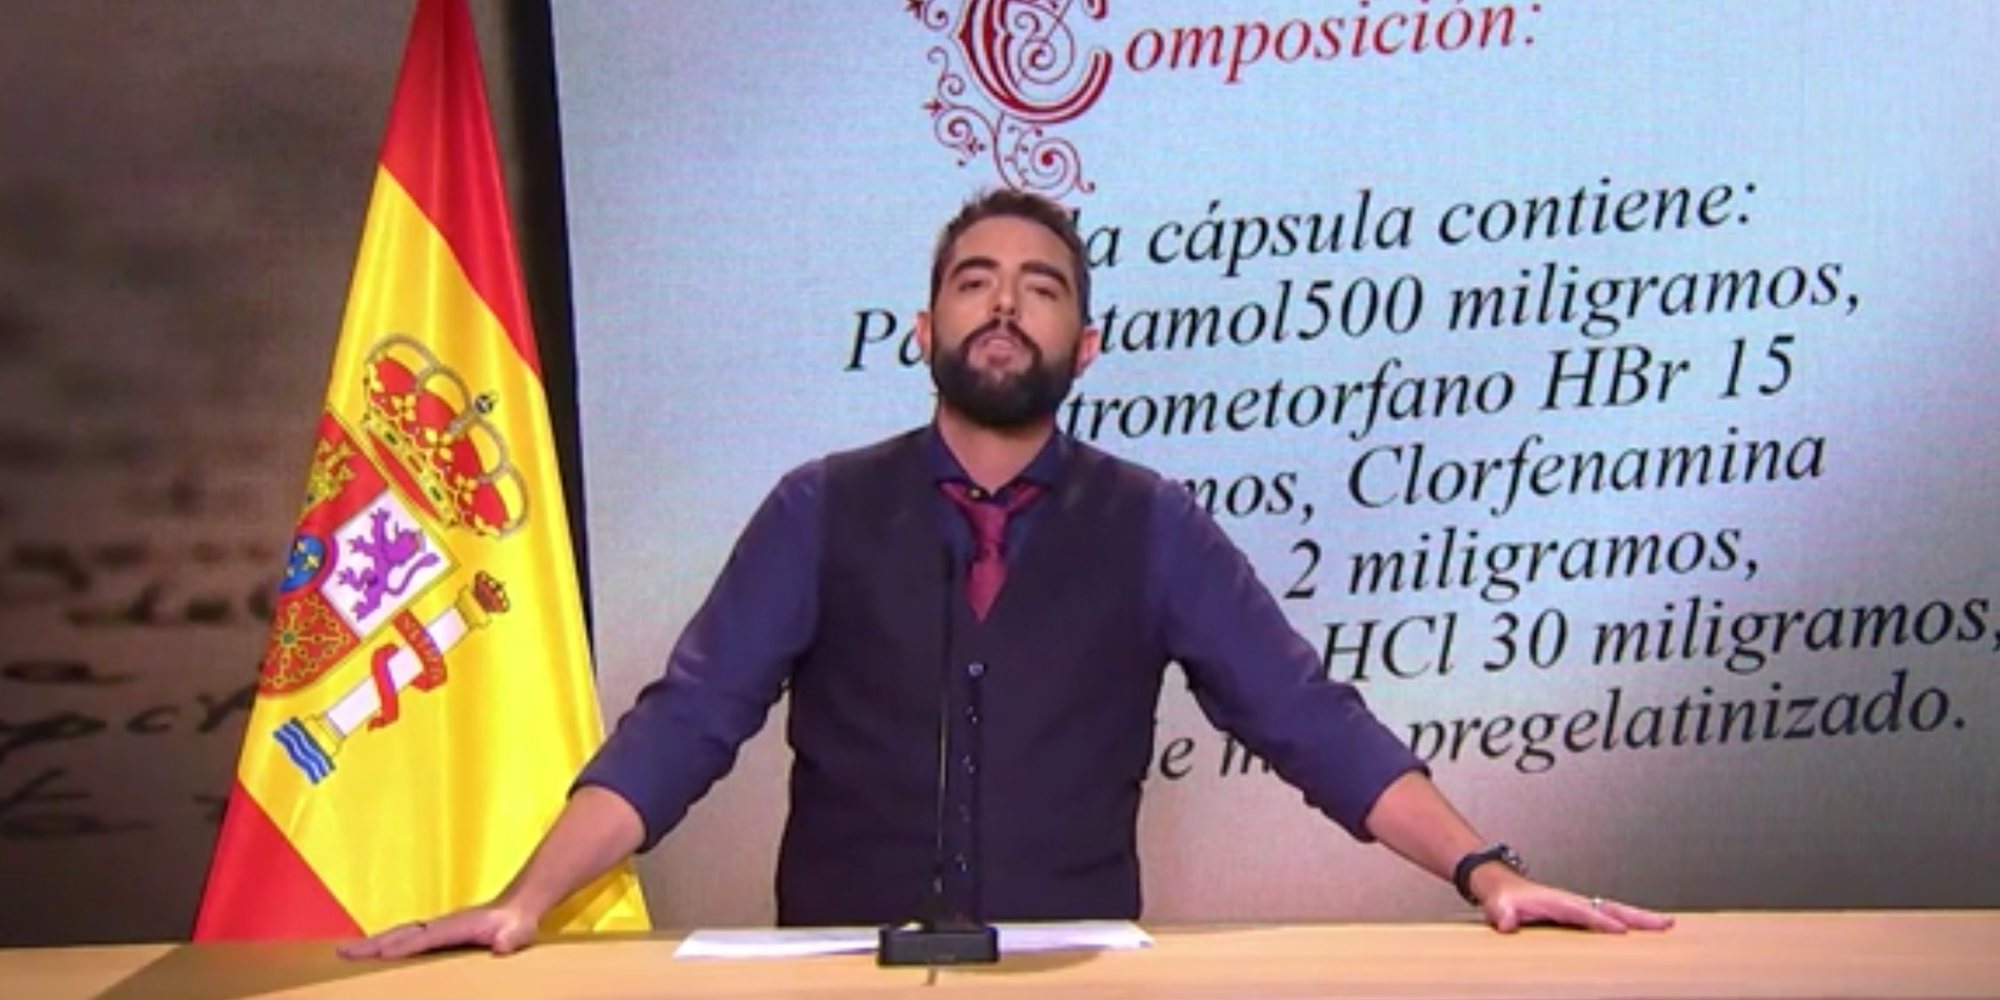 Dani Mateo pide disculpas por sonarse los mocos con la bandera de España en 'El Intermedio'